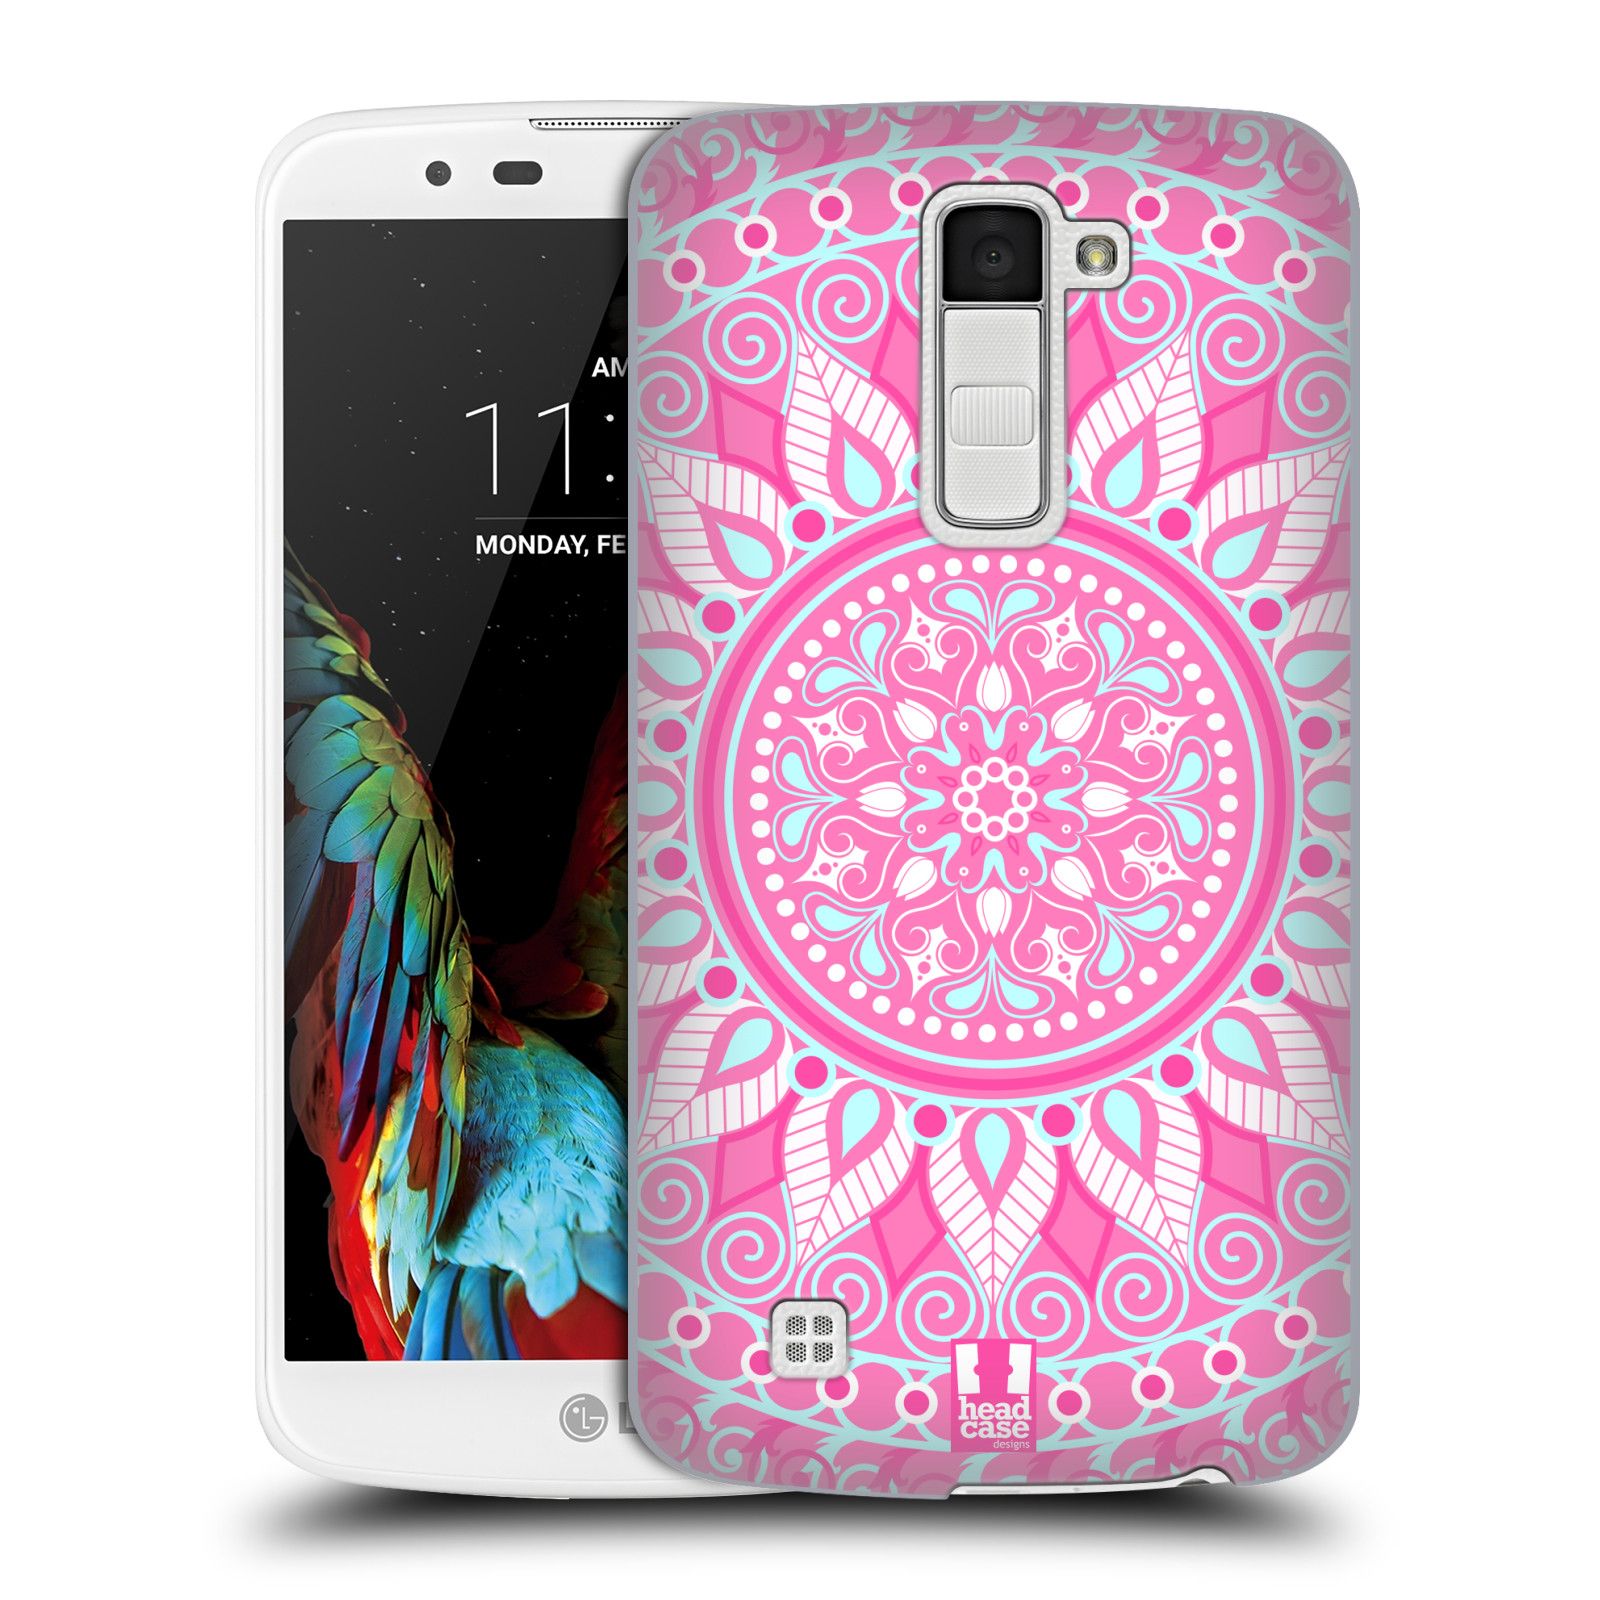 HEAD CASE plastový obal na mobil LG K10 vzor Indie Mandala slunce barevný motiv RŮŽOVÁ